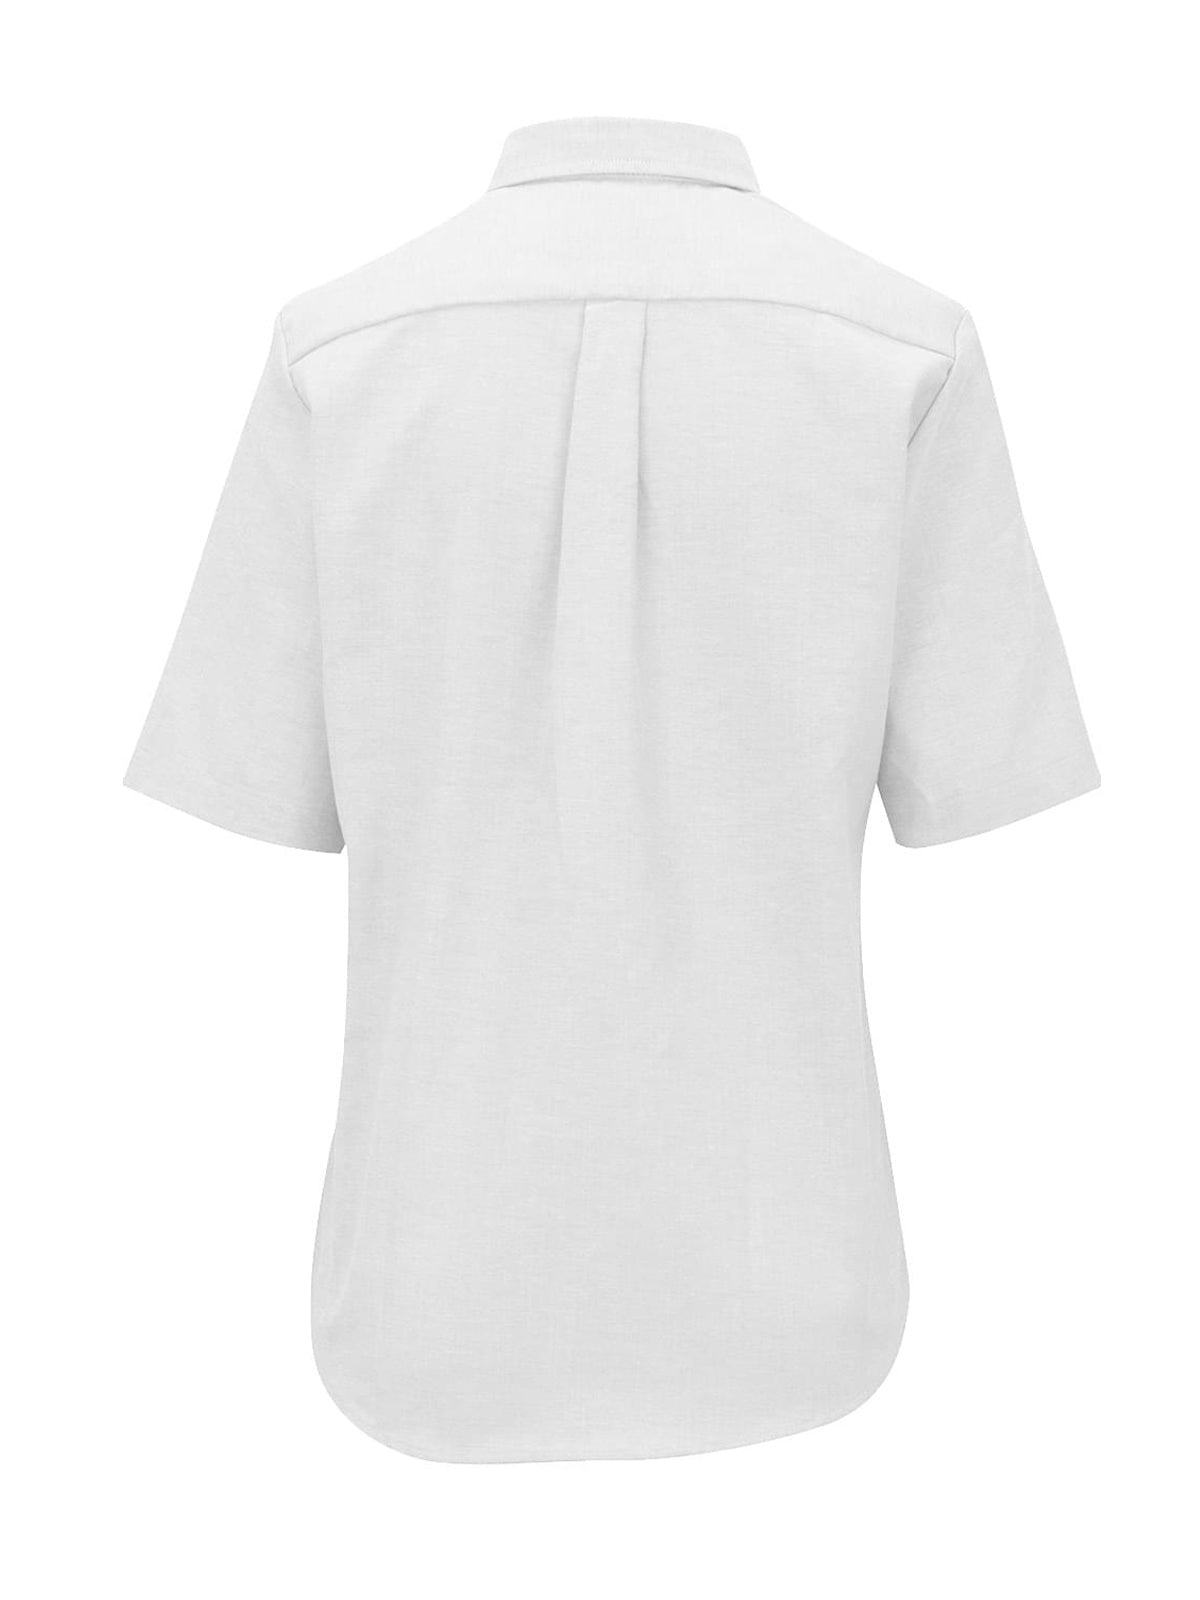 Women's Short Sleeve Easy Care Shirt - 5027 - White